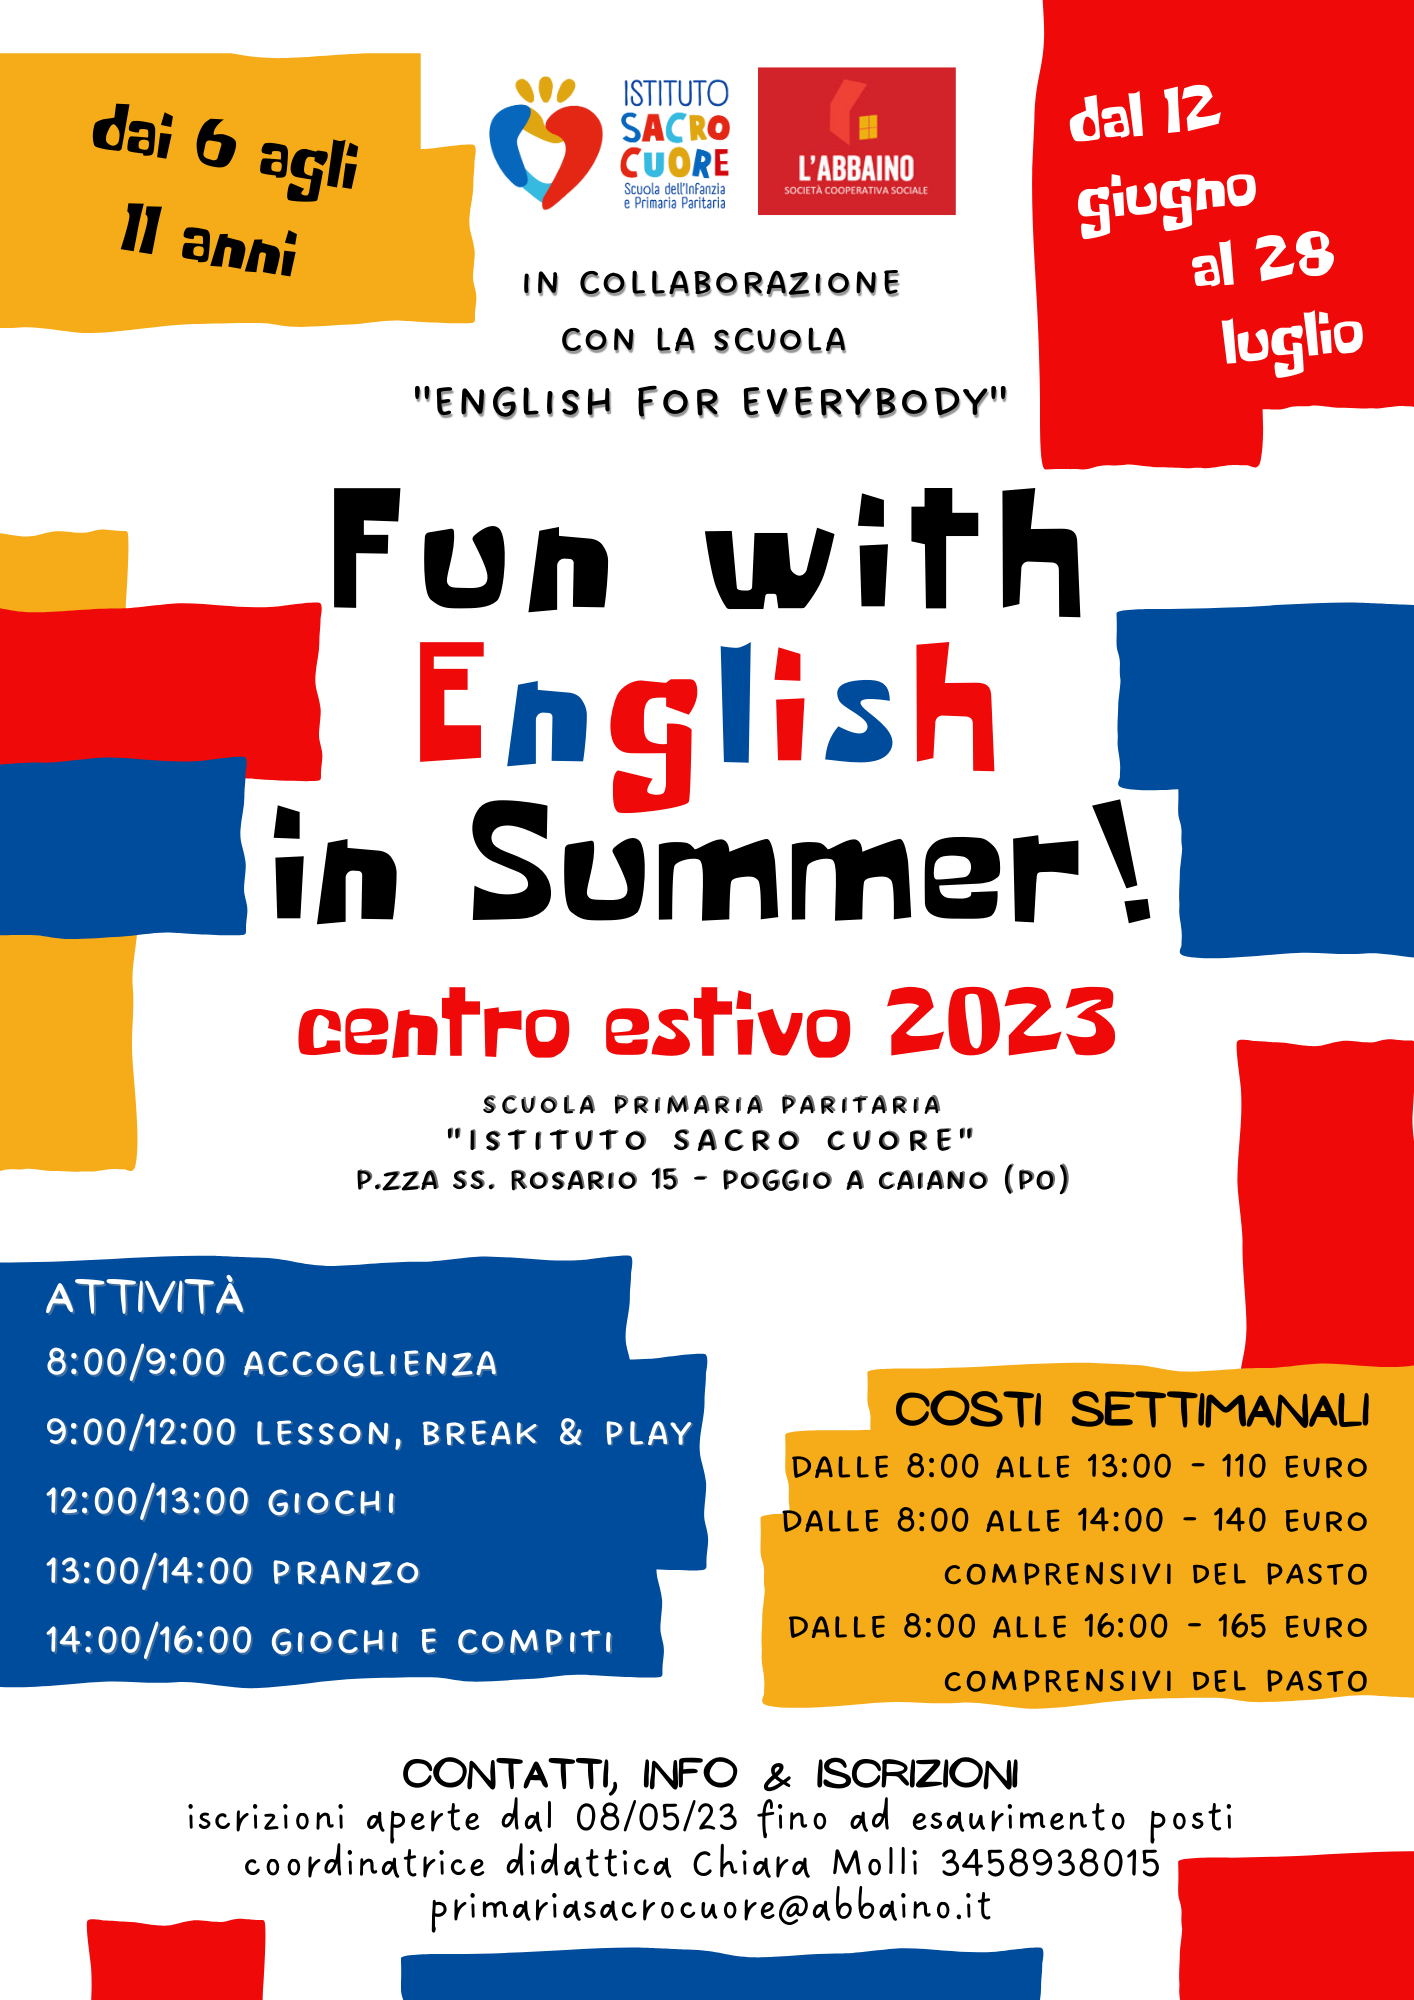 Centri Estivi 2023 Scuola Primaria Sacro Cuore “Fun with English in Summer!”